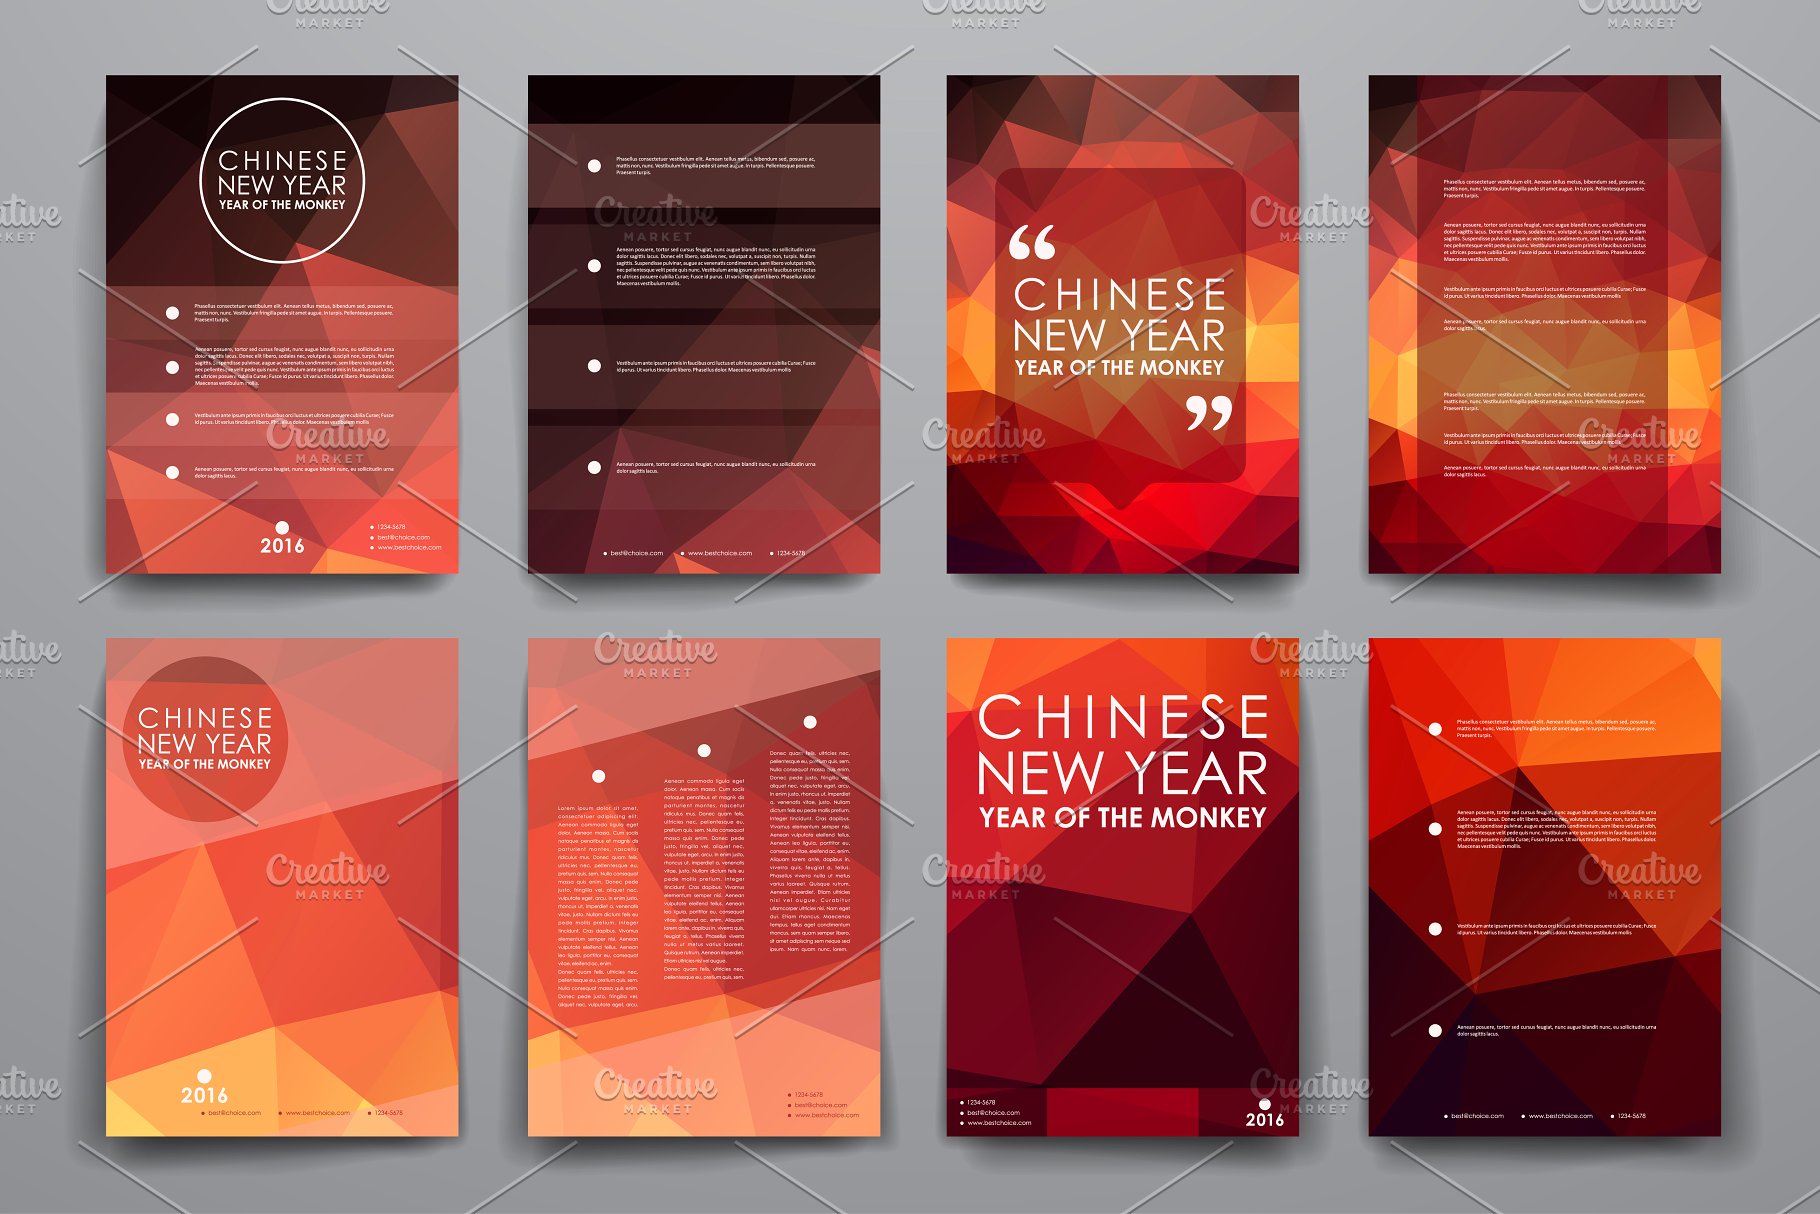 中国新年主题风小册子画册模板 Chinese New Year Brochures插图(1)